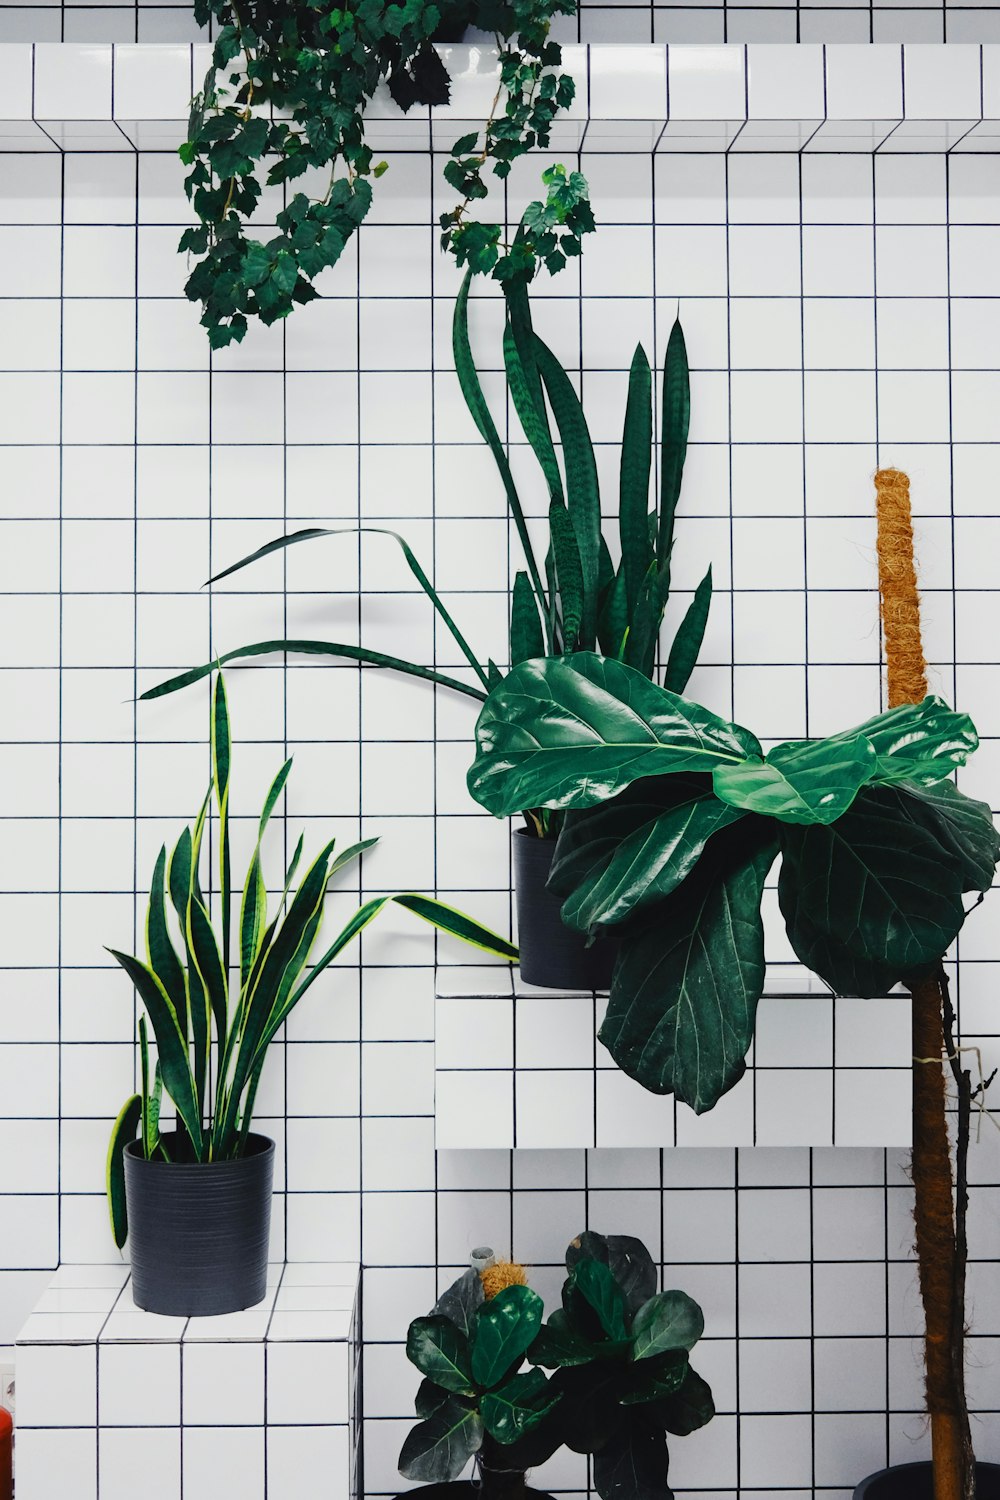 green plant in black pot